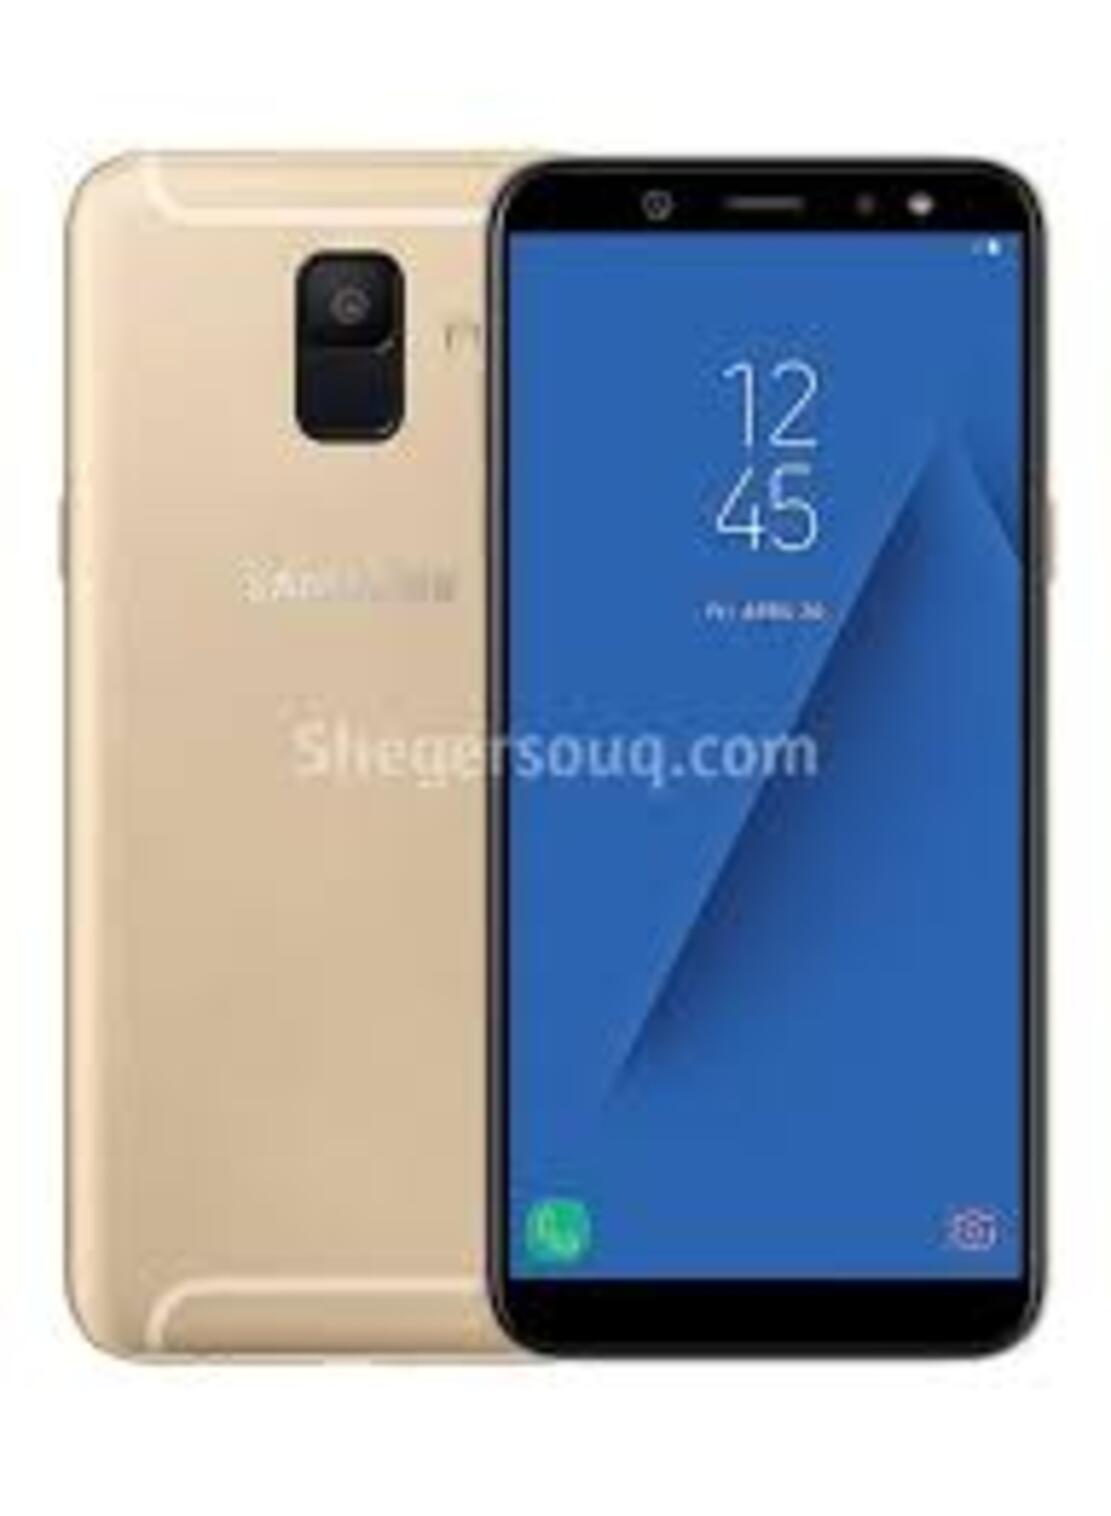 Samsung A6 Plus - điện thoại Samsung Galaxy A6 Plus 2sim ram 4G/32G máy Chính Hãng, lướt Wed Tiktok Facebook Youtube chất, Bảo hành 12 tháng